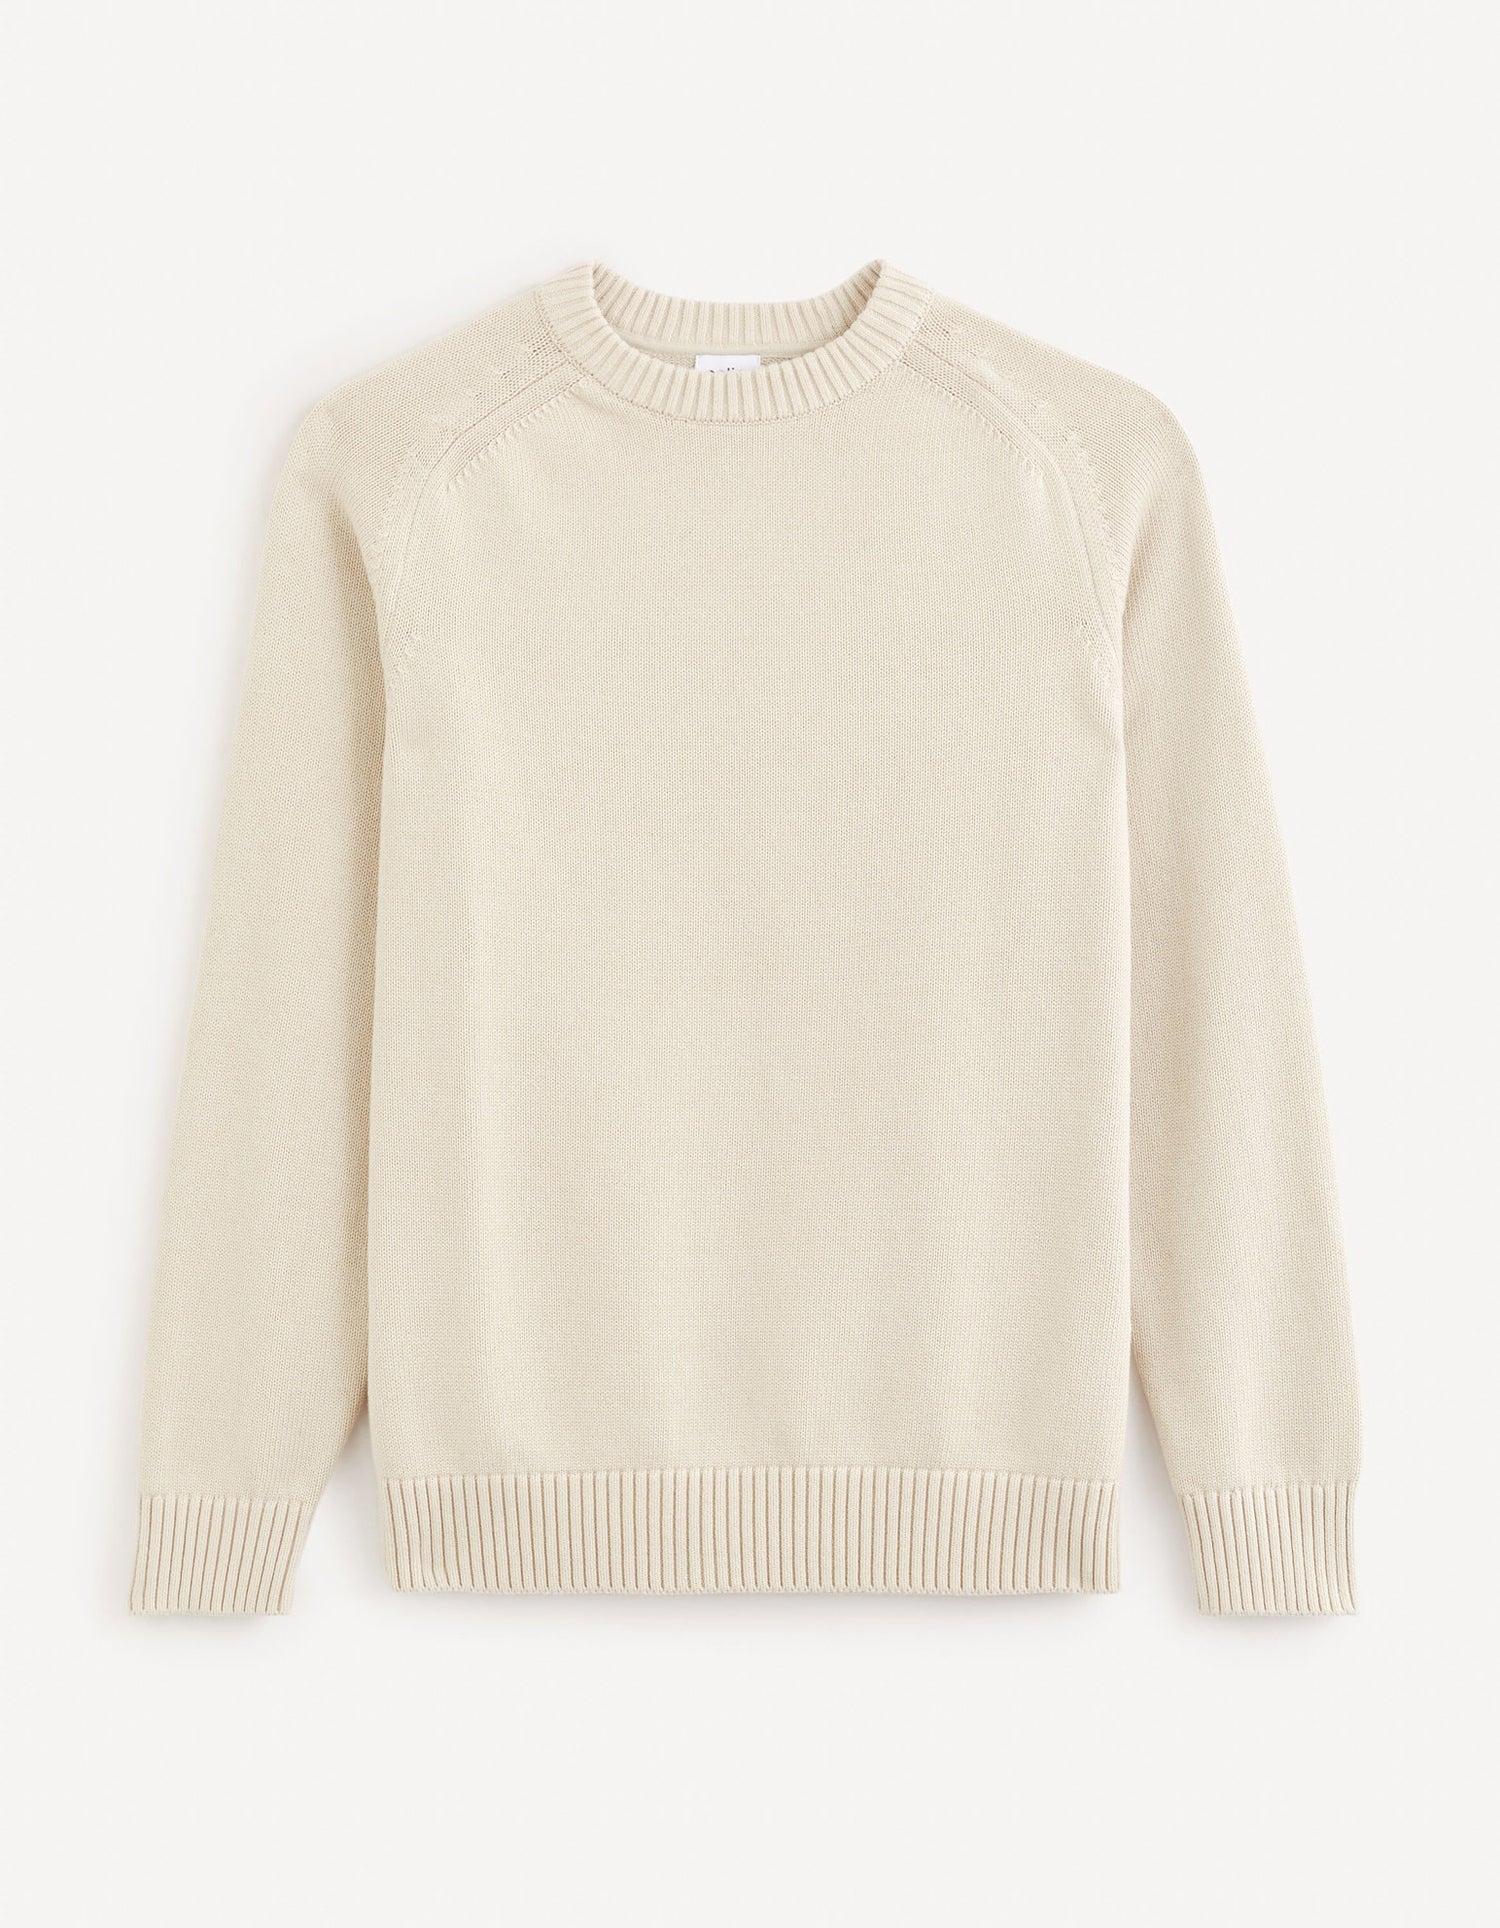 100% Cotton Round Neck Sweater - Beige_FEBASIC_LIGHT BEIGE_02